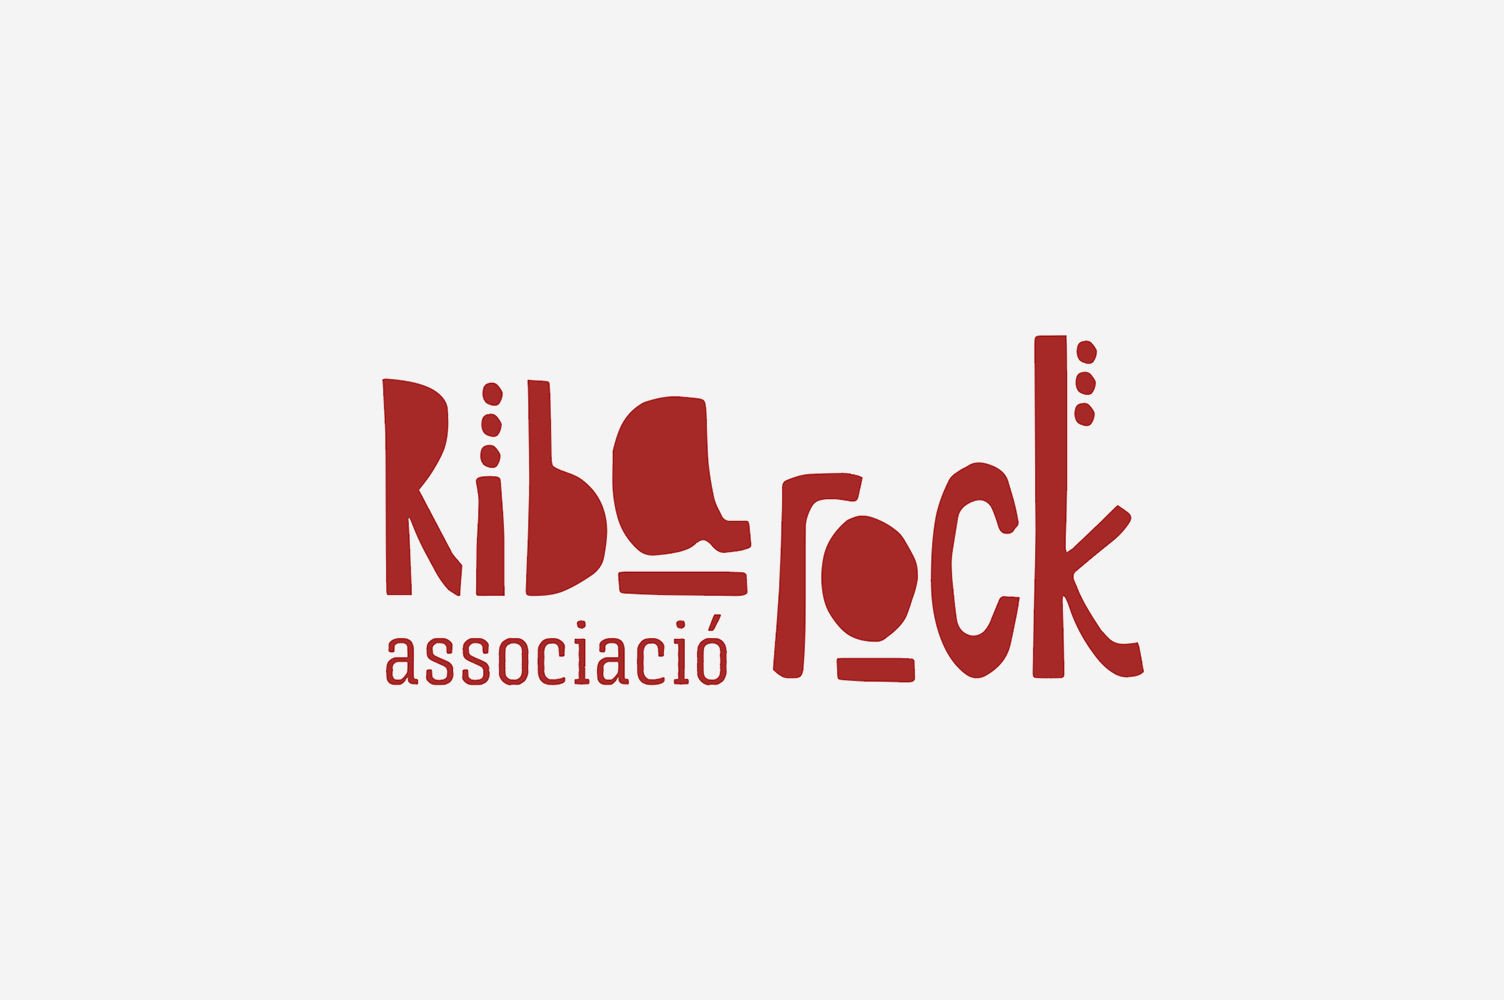 Diseño de marca Riba-rock associació